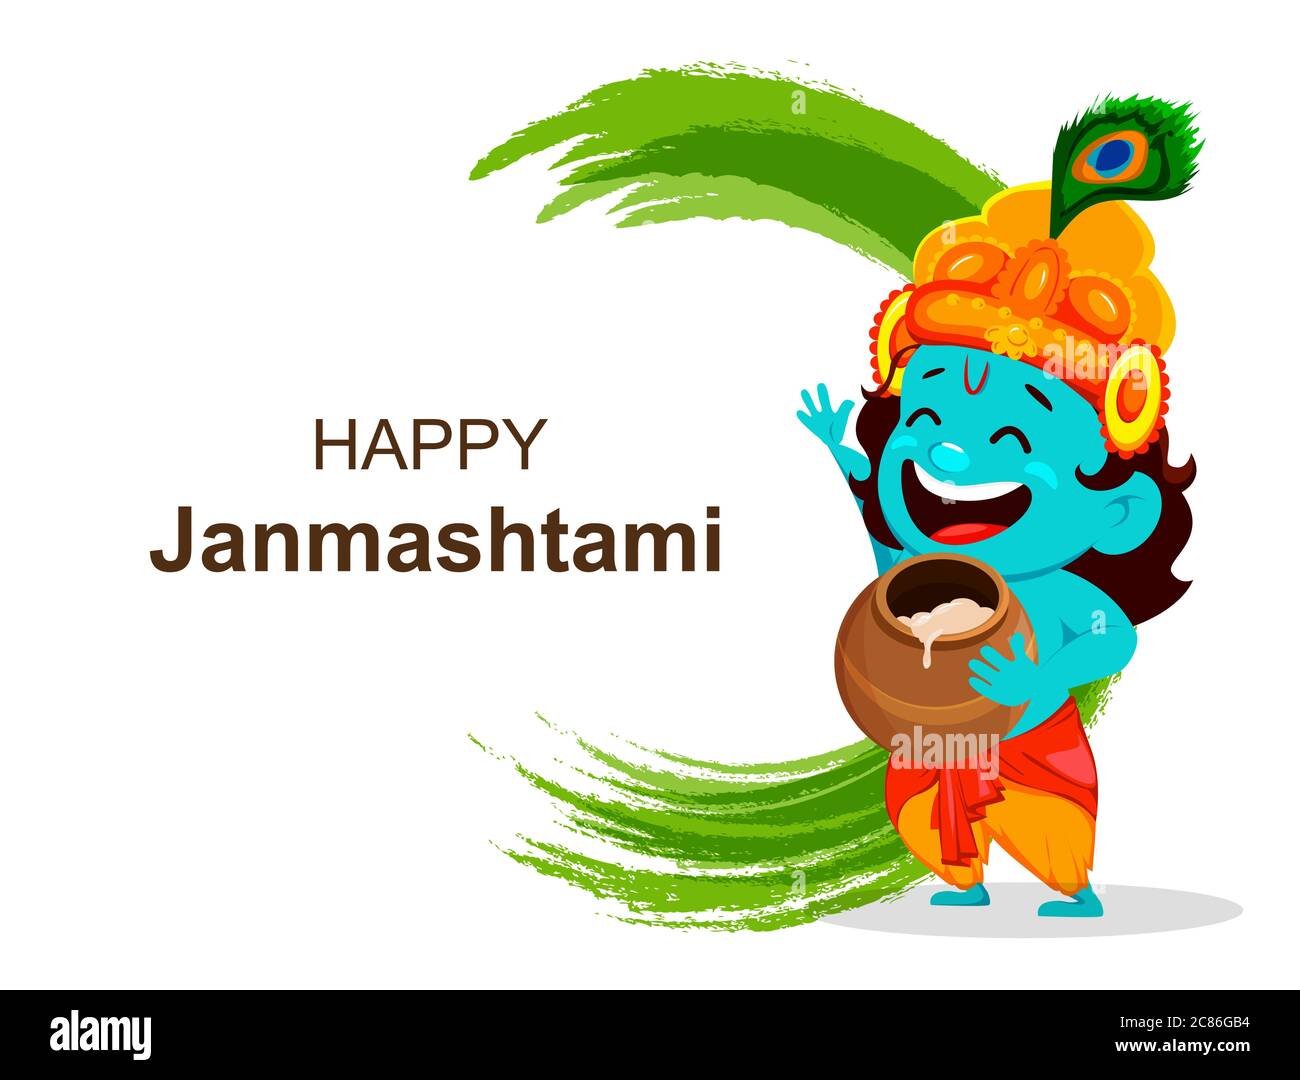 Happy Krishna Janmashtami sale. Cartoon character Lord Krishna. Happy  Janmashtami festival of India. Vector illustration on abstract background  Stock Vector Image & Art - Alamy